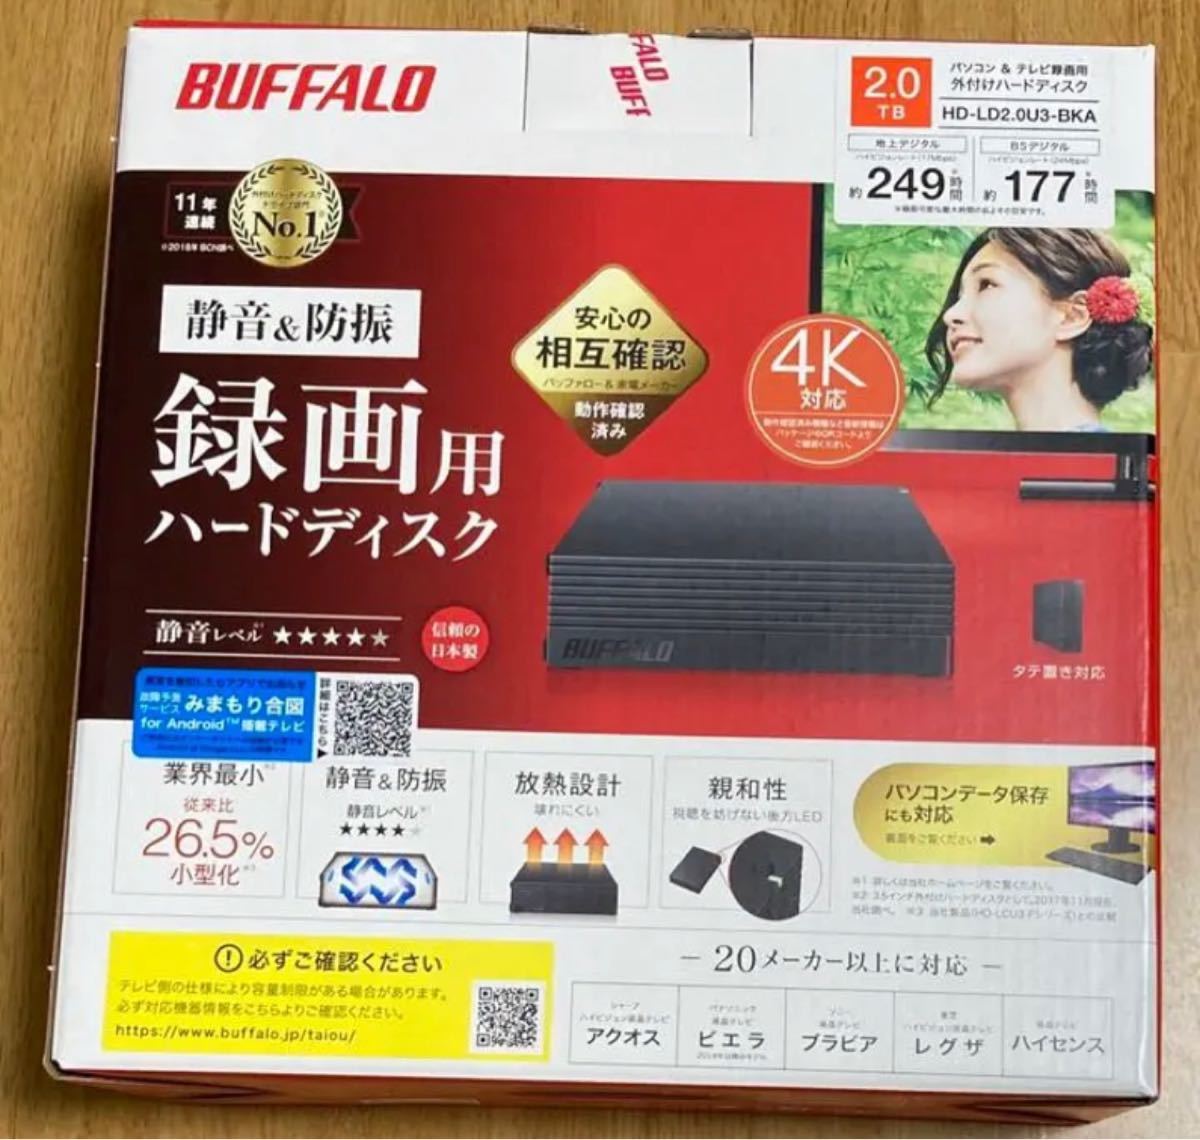 新品未開封 ハードディスク 2TB BUFFALO HD-LD2.0U3-BKA